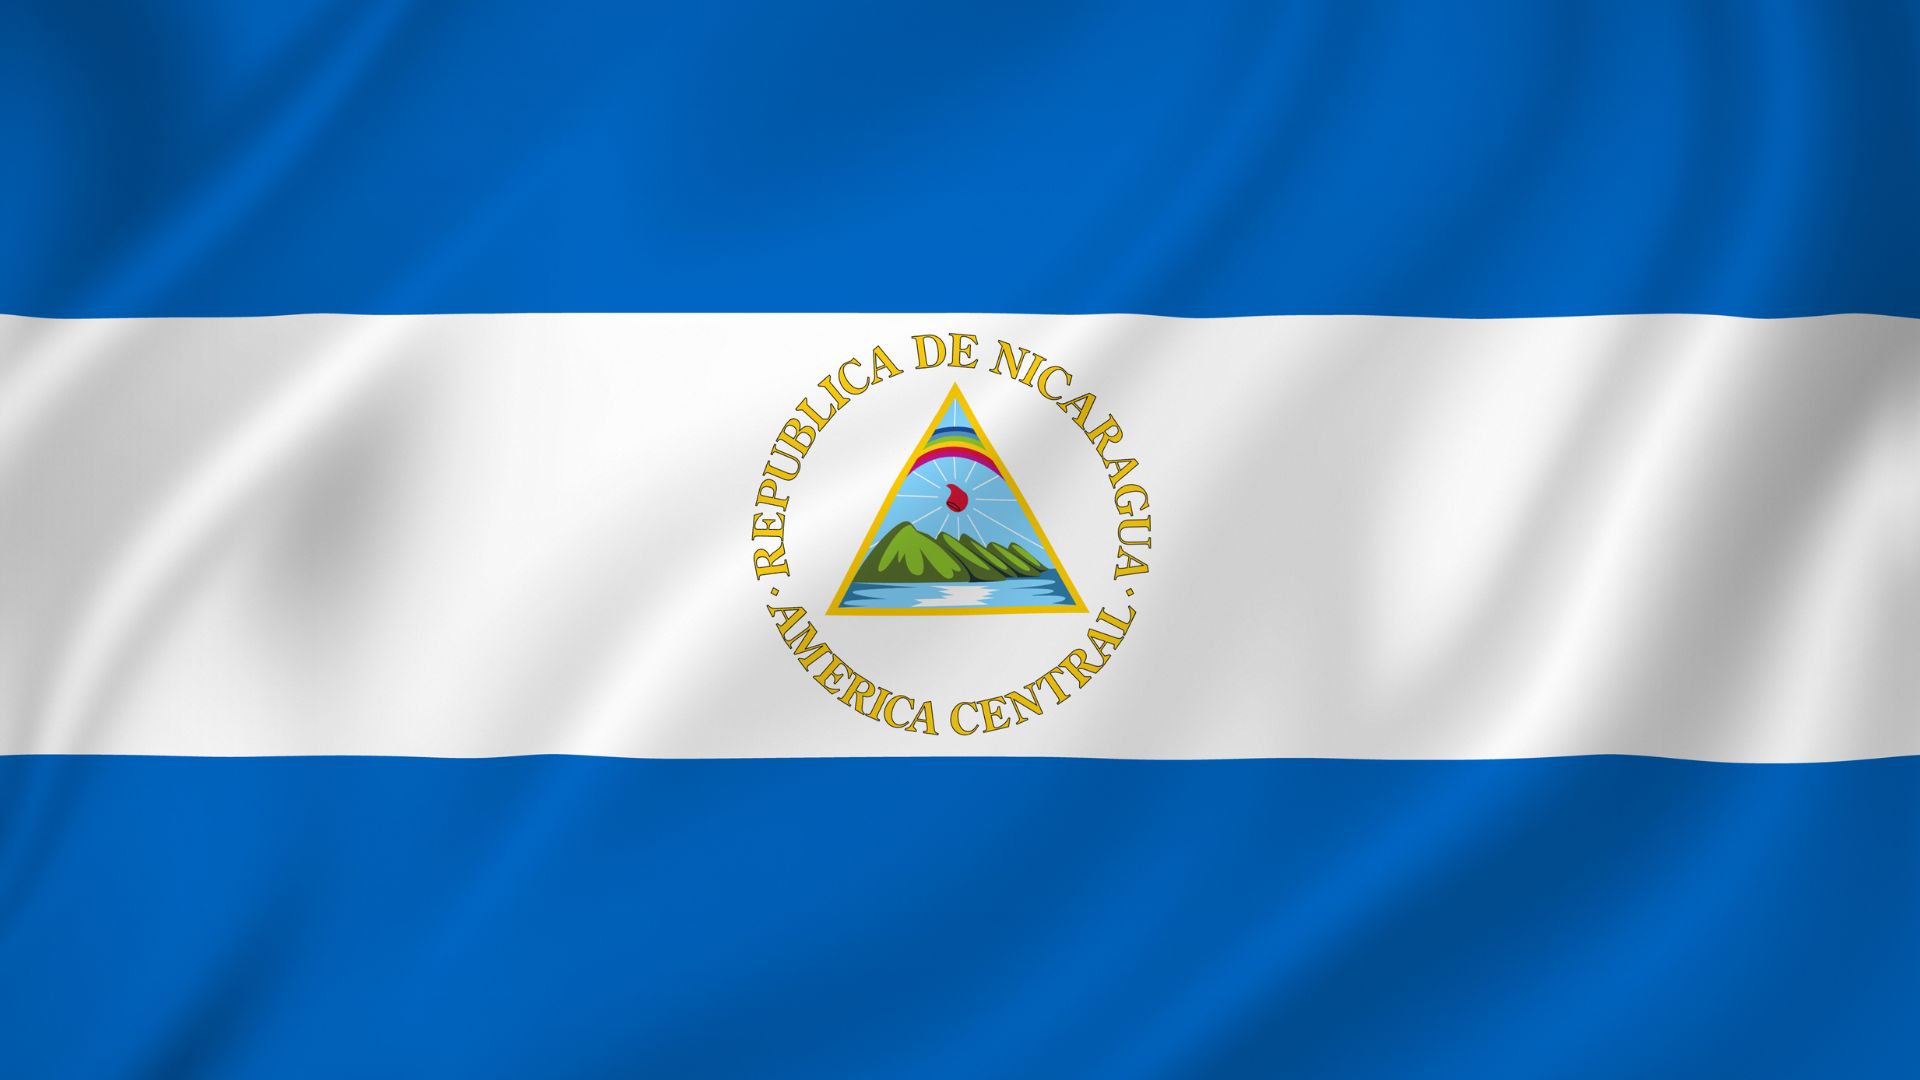 Bandeira da Nicarágua é formada por três linhas horizontais iguais, as duas exteriores de cor azul e a central de cor branca.  No centro está o escudo nacional, que consiste em um triângulo com cinco vulcões verdes, sobre esses um gorro e um arco-íris.